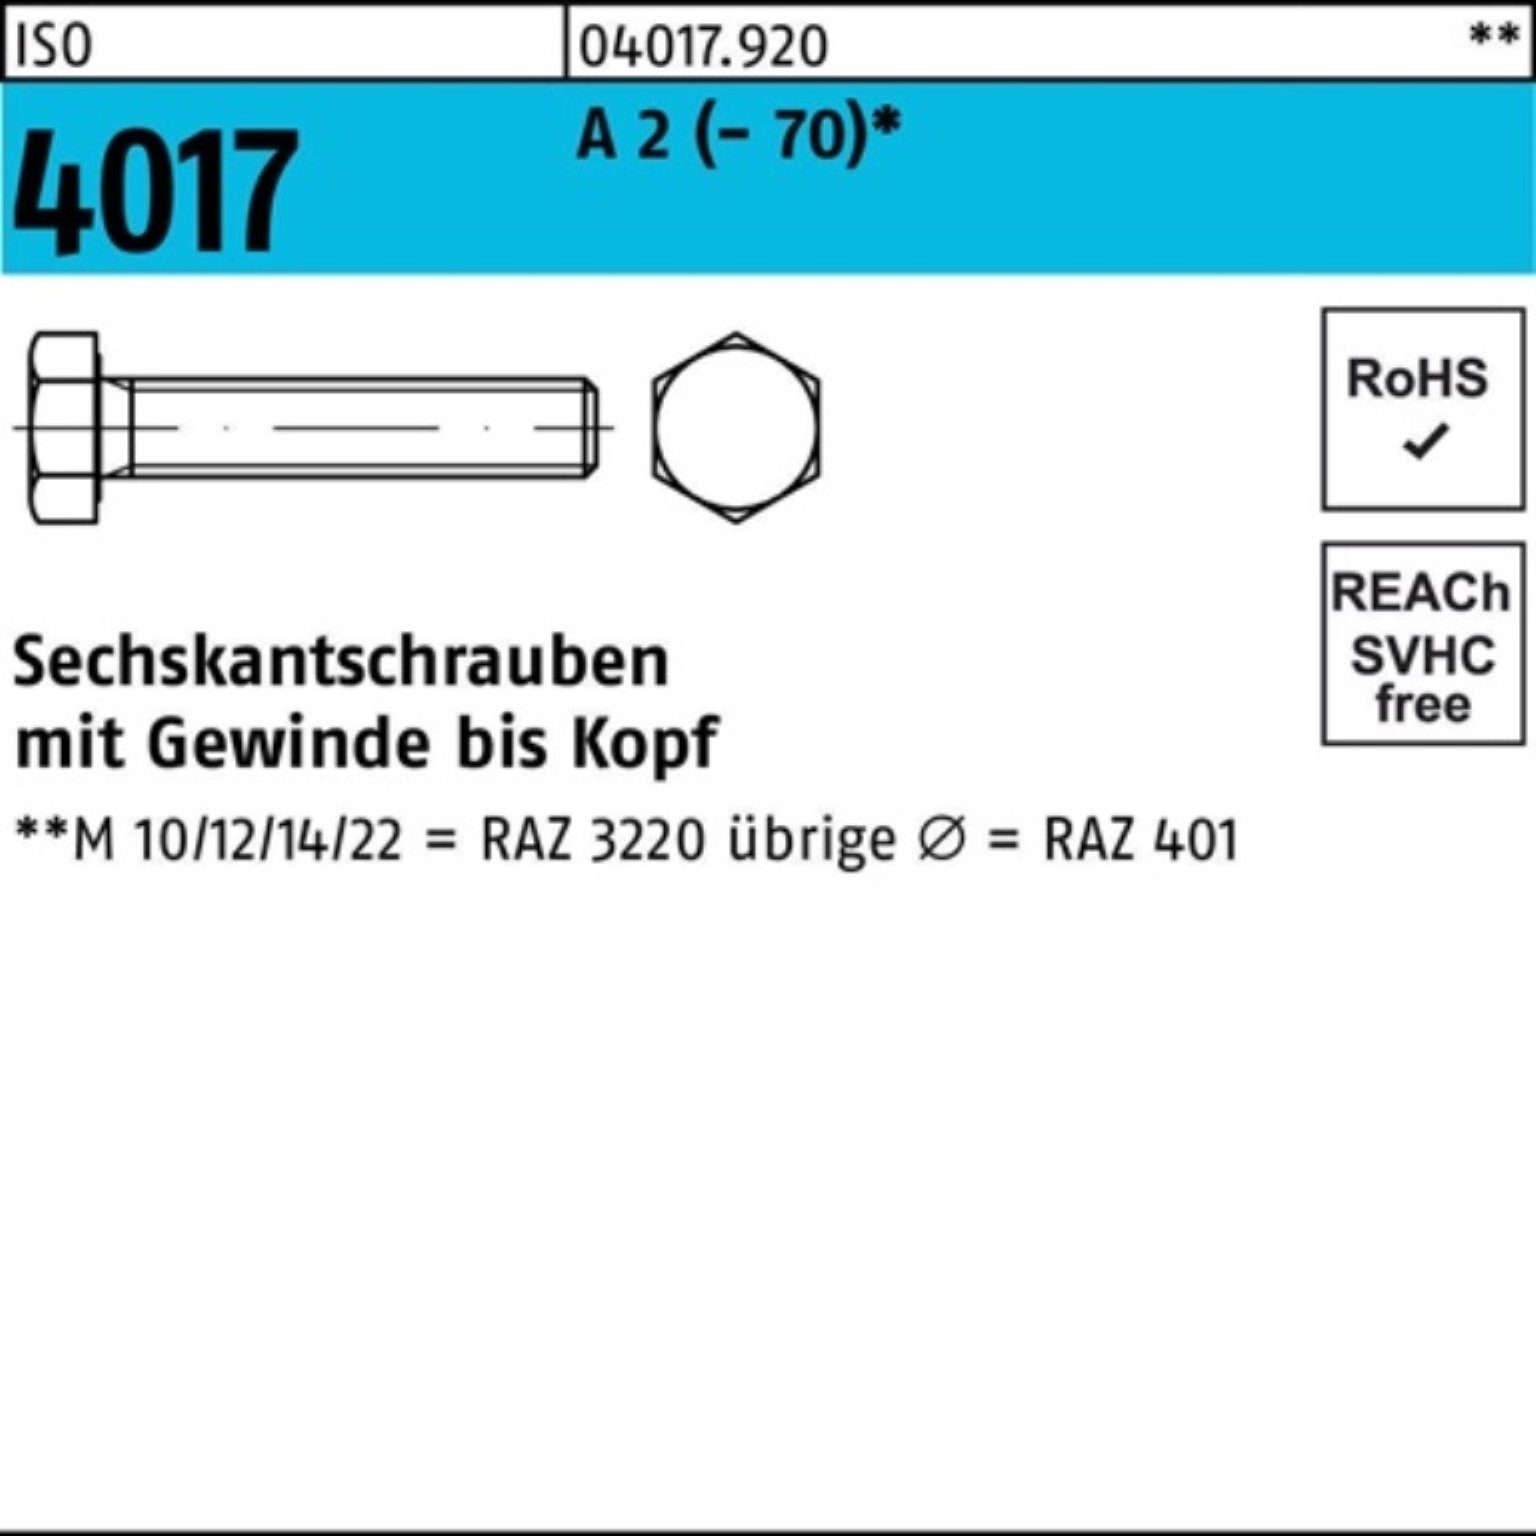 Bufab 2 25 100er VG Sechskantschraube 65 M18x 4017 Sechskantschraube Pack A (70) Stück ISO